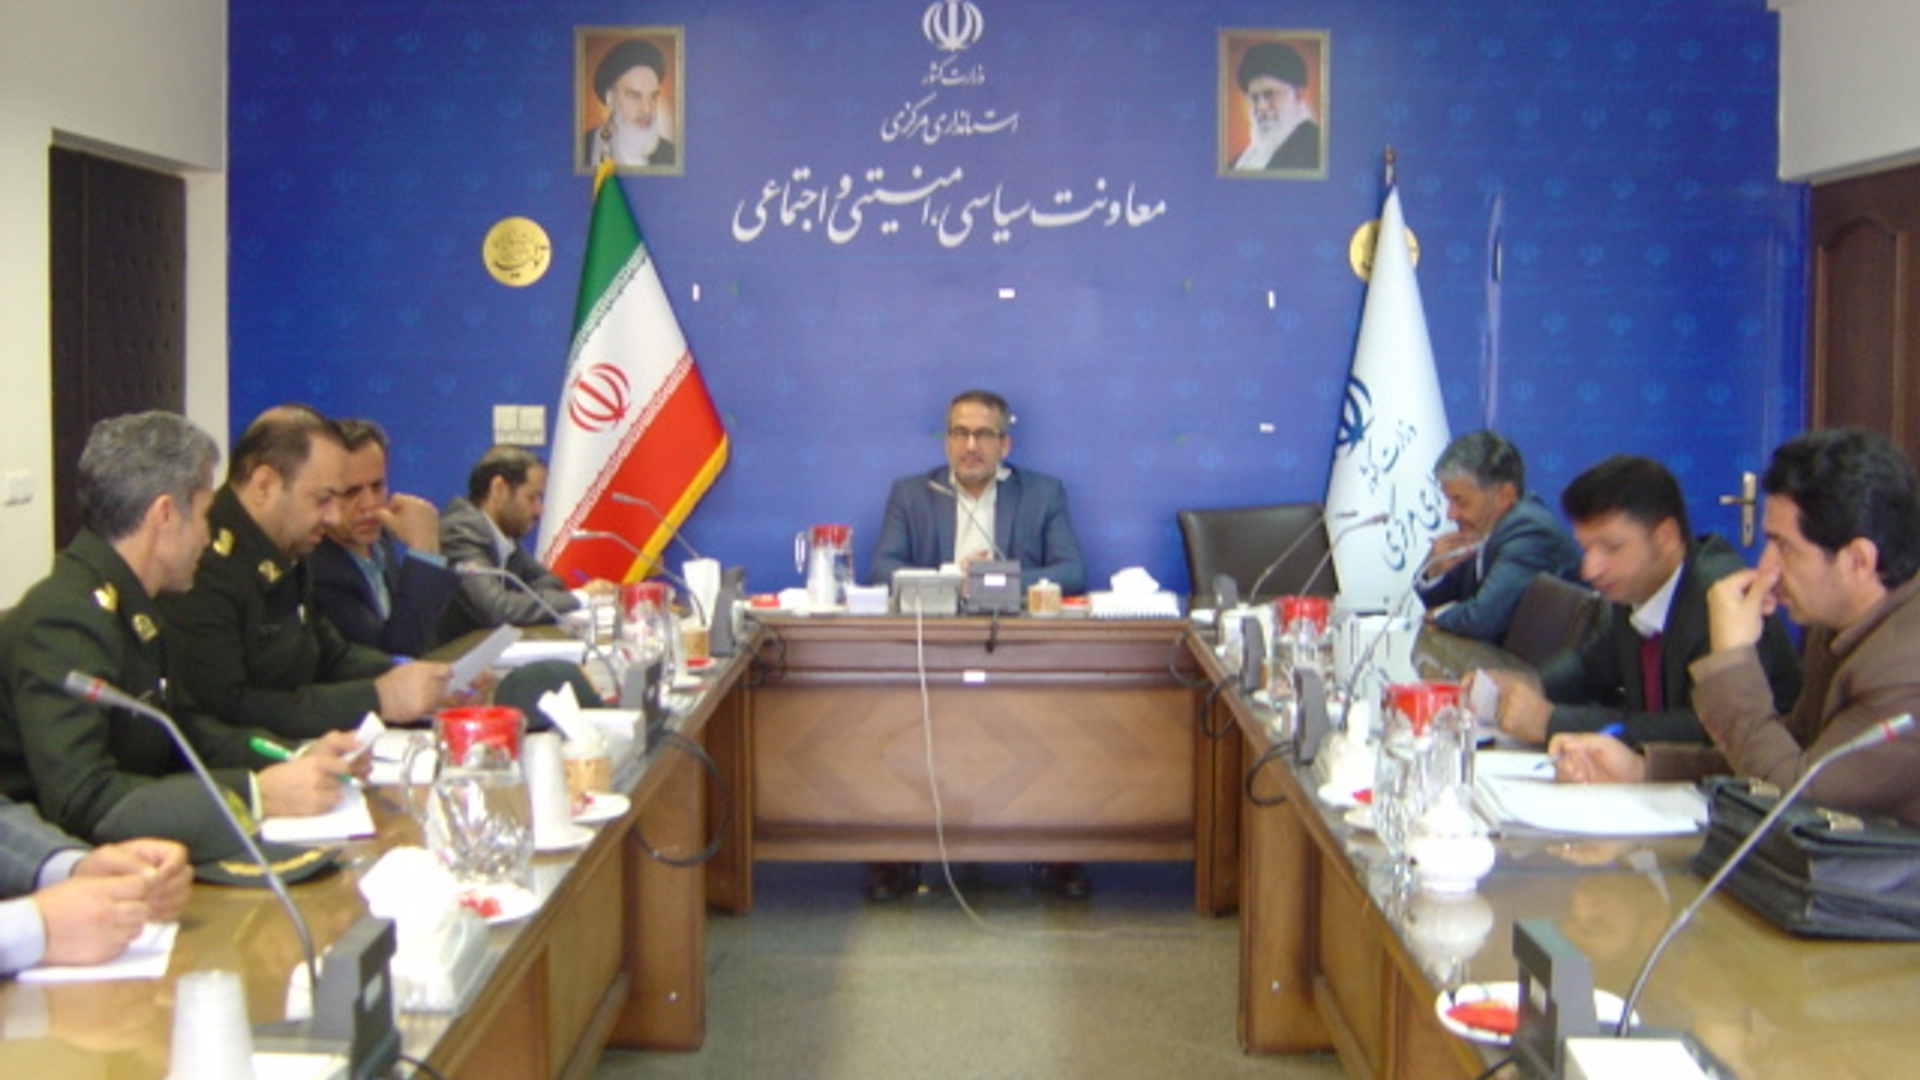 جلسه کمیسیون پیشگیری و مقابله با سرقت استان مورخ 1401-9-10 به ریاست آقای رحیمی تبار مدیر کل امنیتی و انتظامی برگزار گردید.